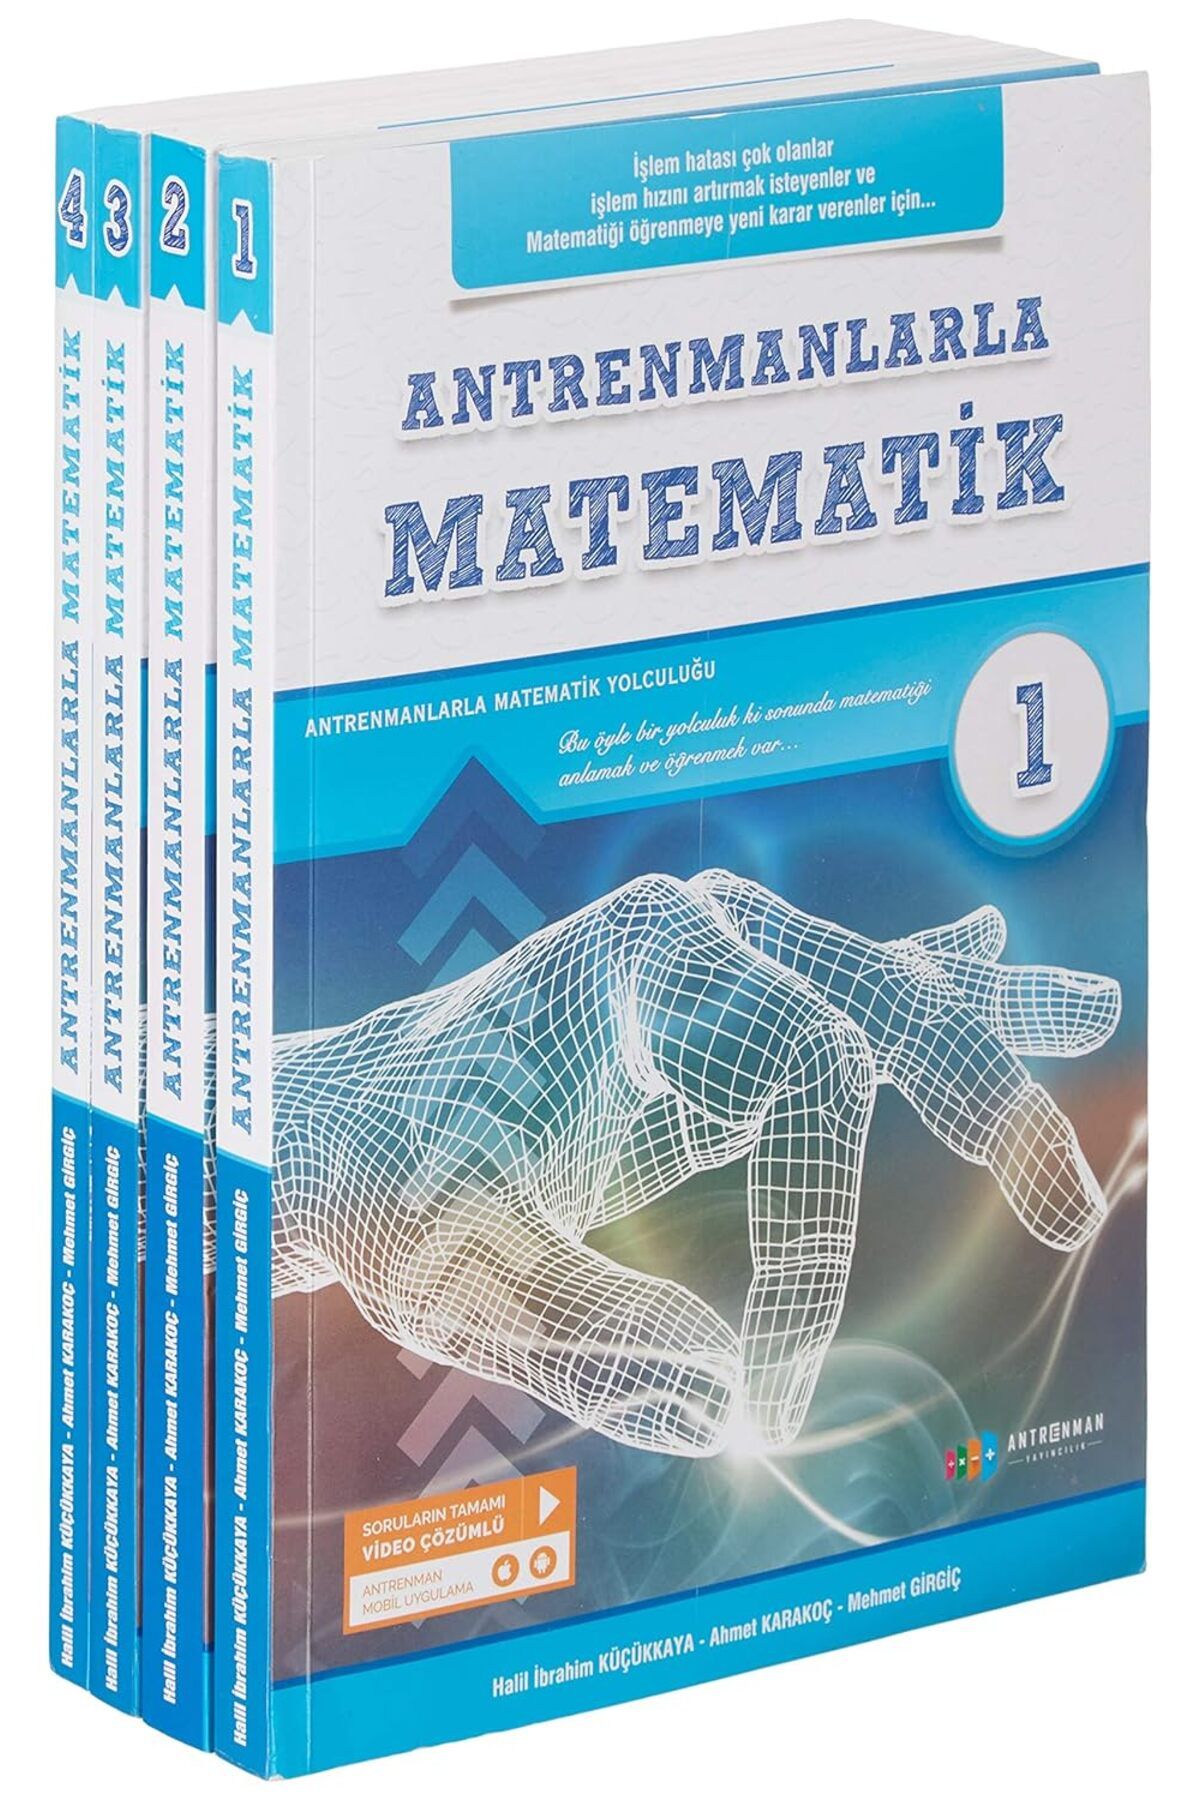 Antrenman Yayıncılık Antrenmanlarla Matematik 1-2-3-4 Kitap Seti